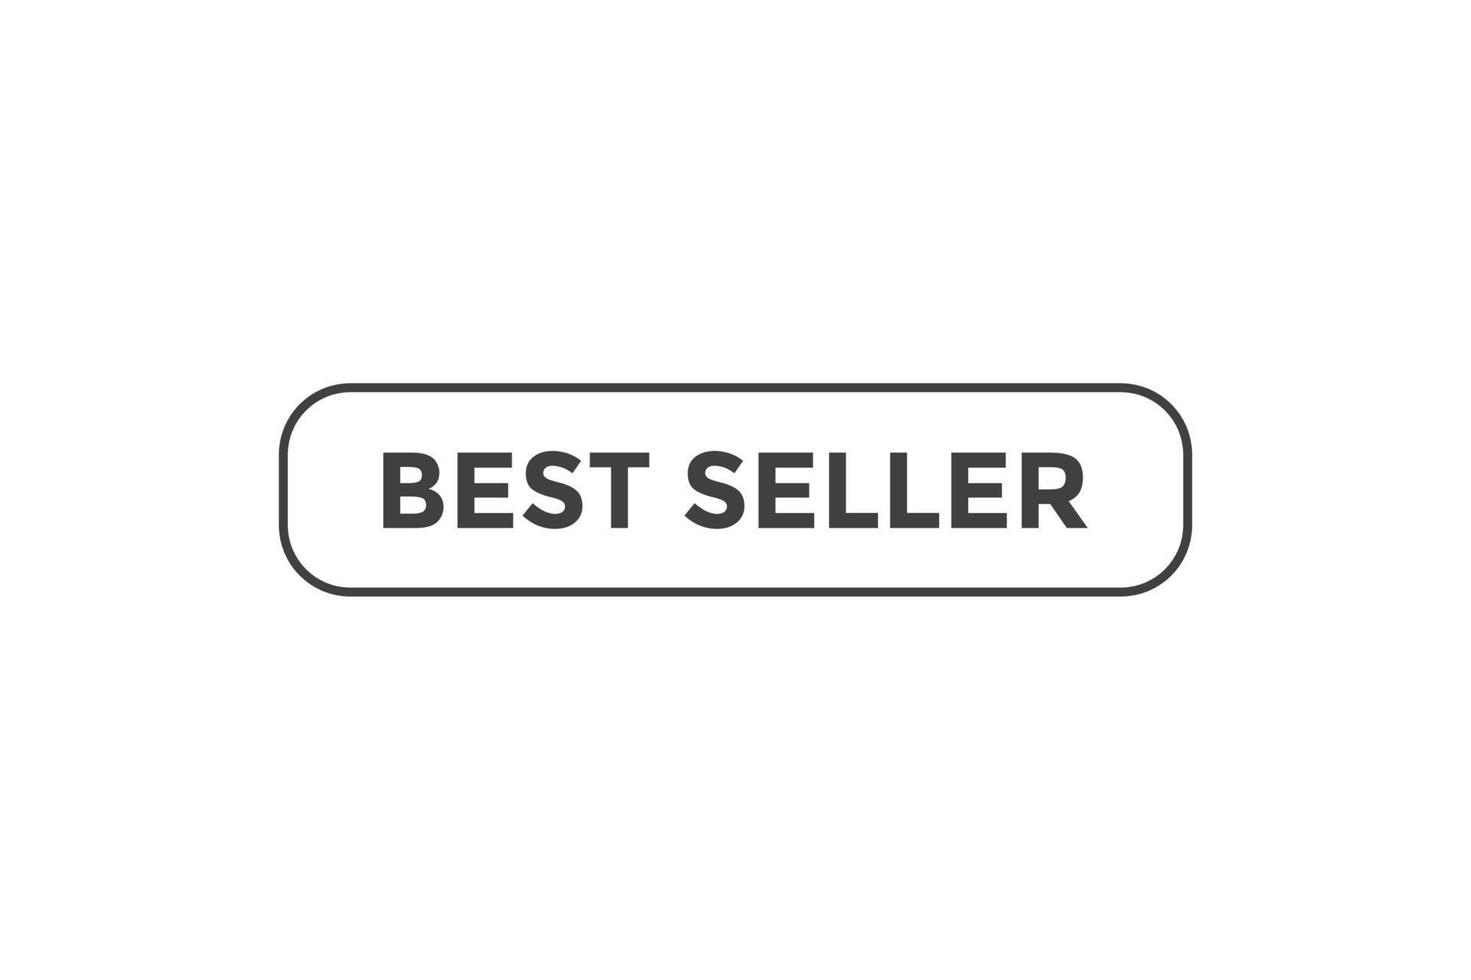 plantillas de banner web de botón de mejor vendedor. ilustración vectorial vector